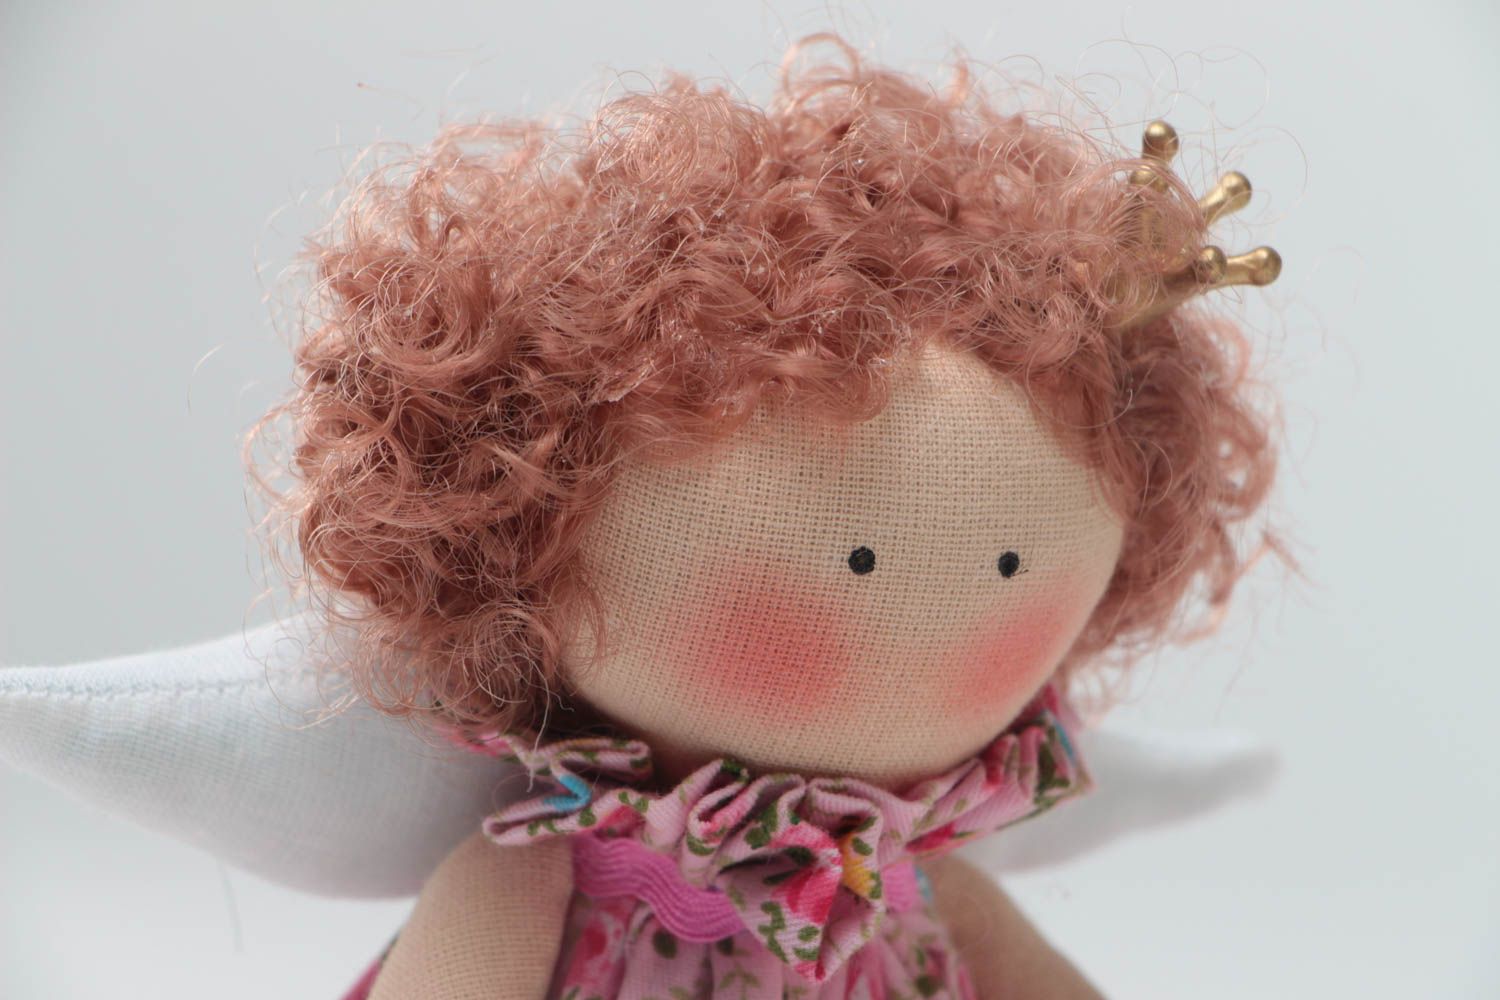 Коллекционная текстильная кукла ручной работы мягкая красивая для дома и детей фото 3